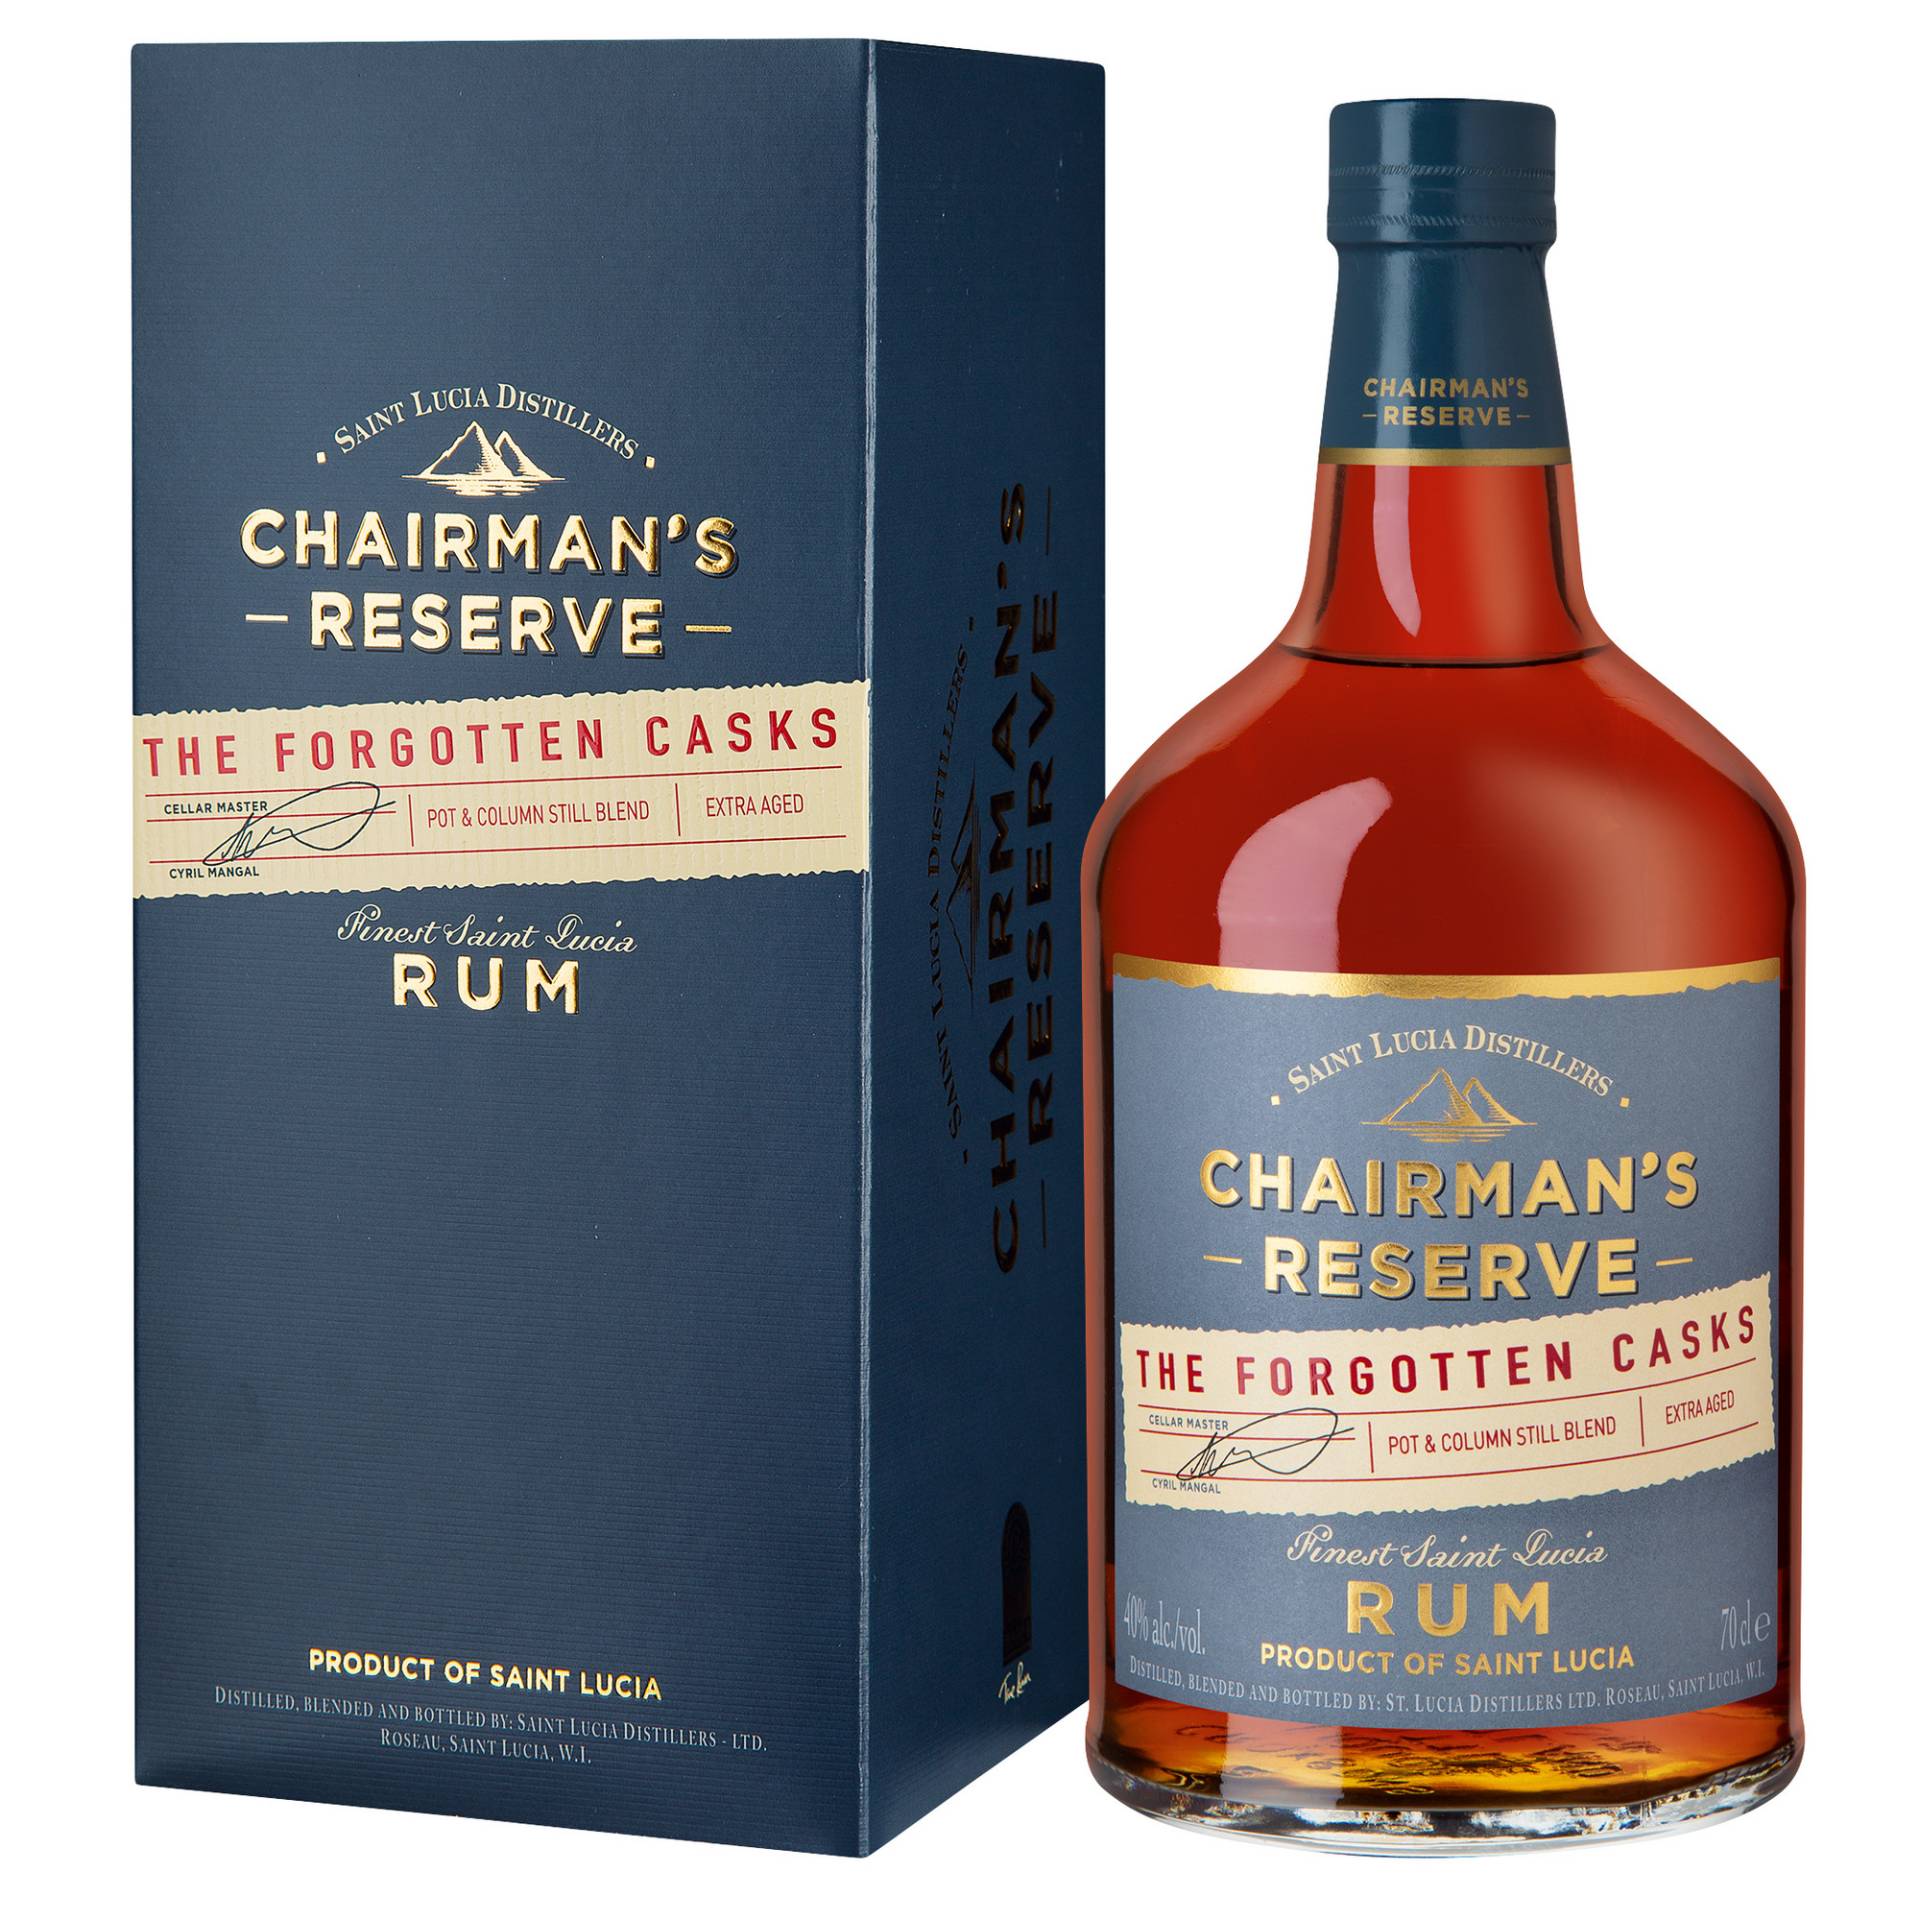 Chairman's Reserve Rum "The Forgotten Casks", St. Lucia, 0,7 L, 40,0% Vol. in Etui, Spirituosen von Ferrand Deutschland GmbH, Sundernallee 75, 53636 Iserlohn, Deutschland